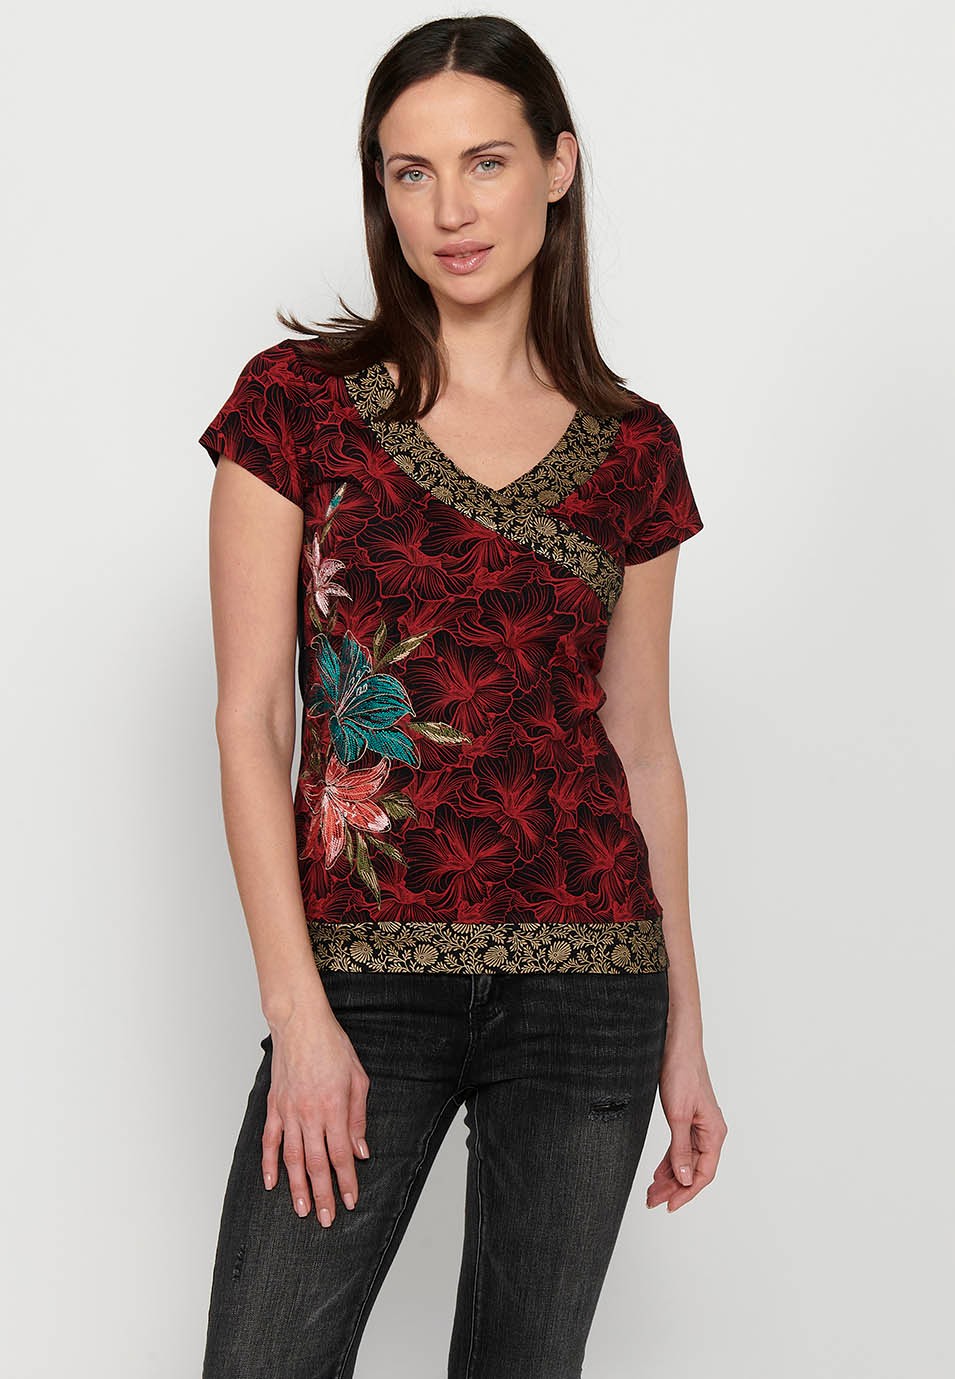 Samarreta de màniga curta, coll en bec i detalls brodats florals multicolor per a dona